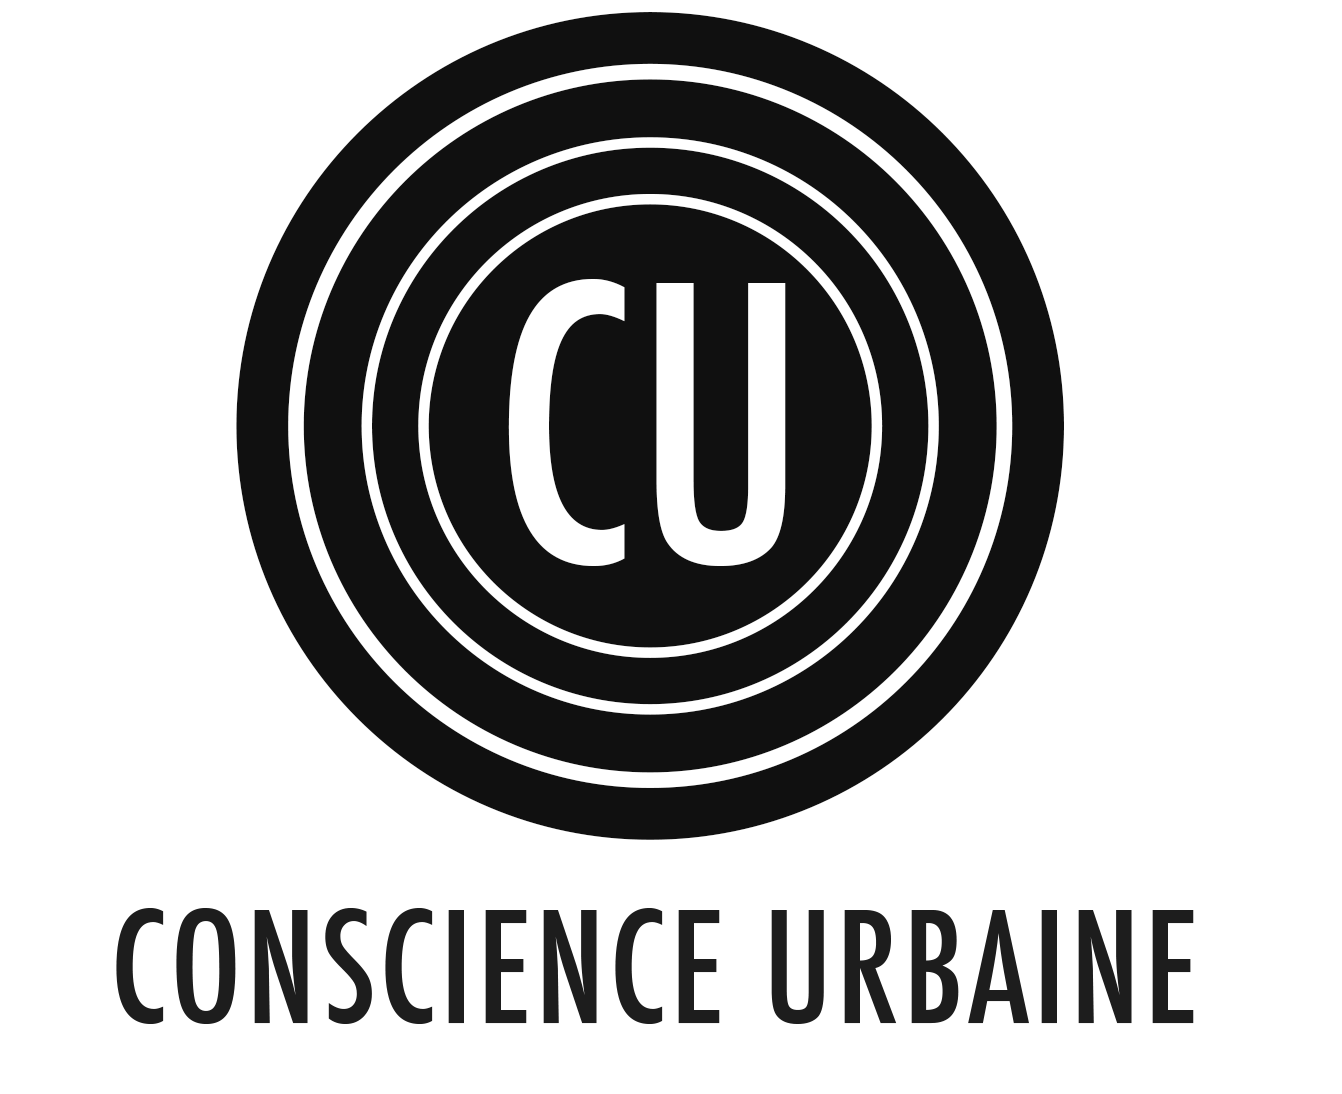 Logo - Mbiance